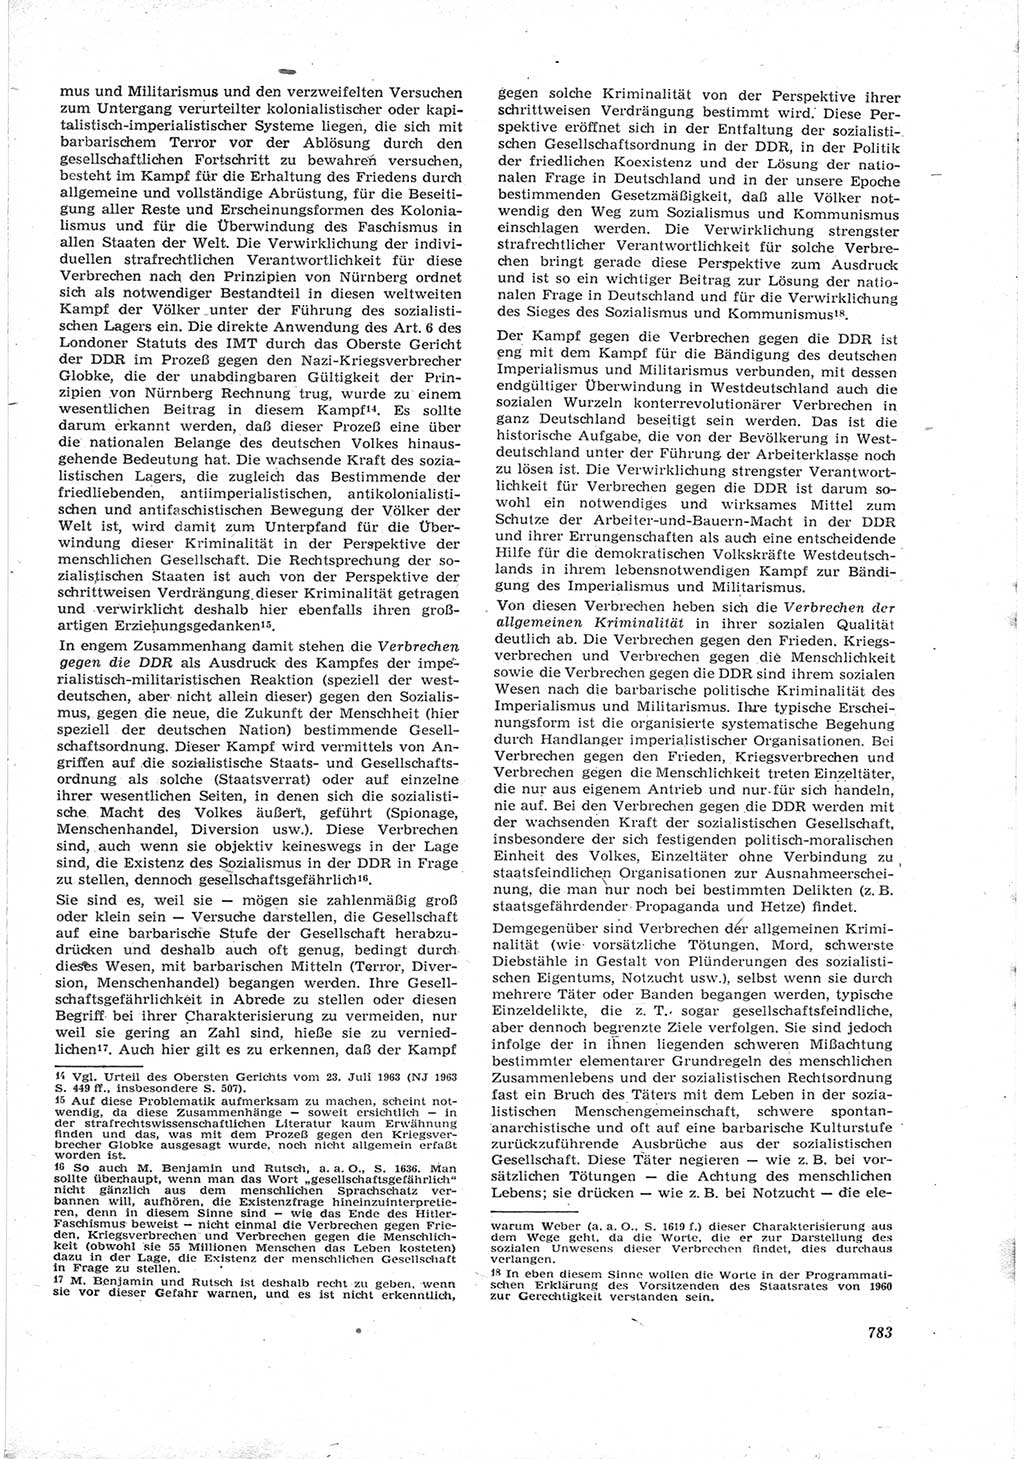 Neue Justiz (NJ), Zeitschrift für Recht und Rechtswissenschaft [Deutsche Demokratische Republik (DDR)], 17. Jahrgang 1963, Seite 783 (NJ DDR 1963, S. 783)